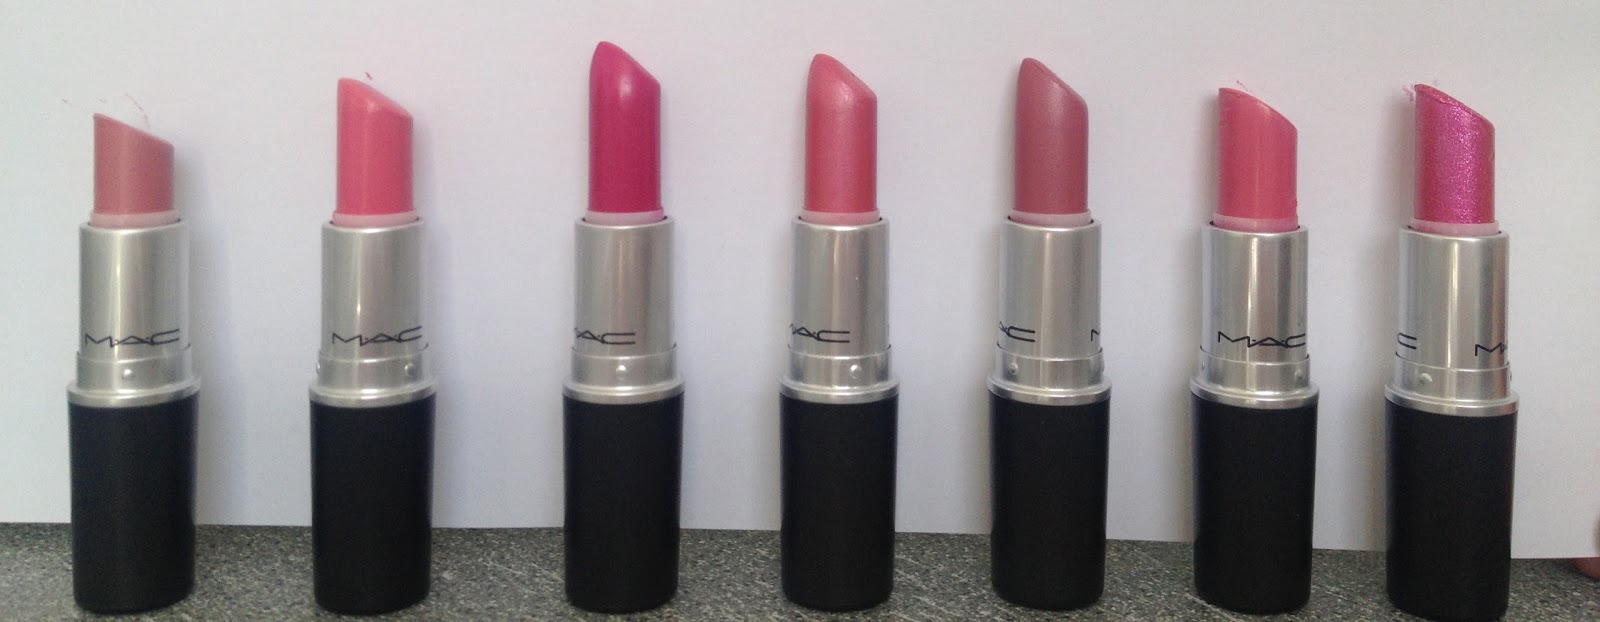 My Mac Lipstick Collection Mammaful Zo Beauty Fashion Lifestyle